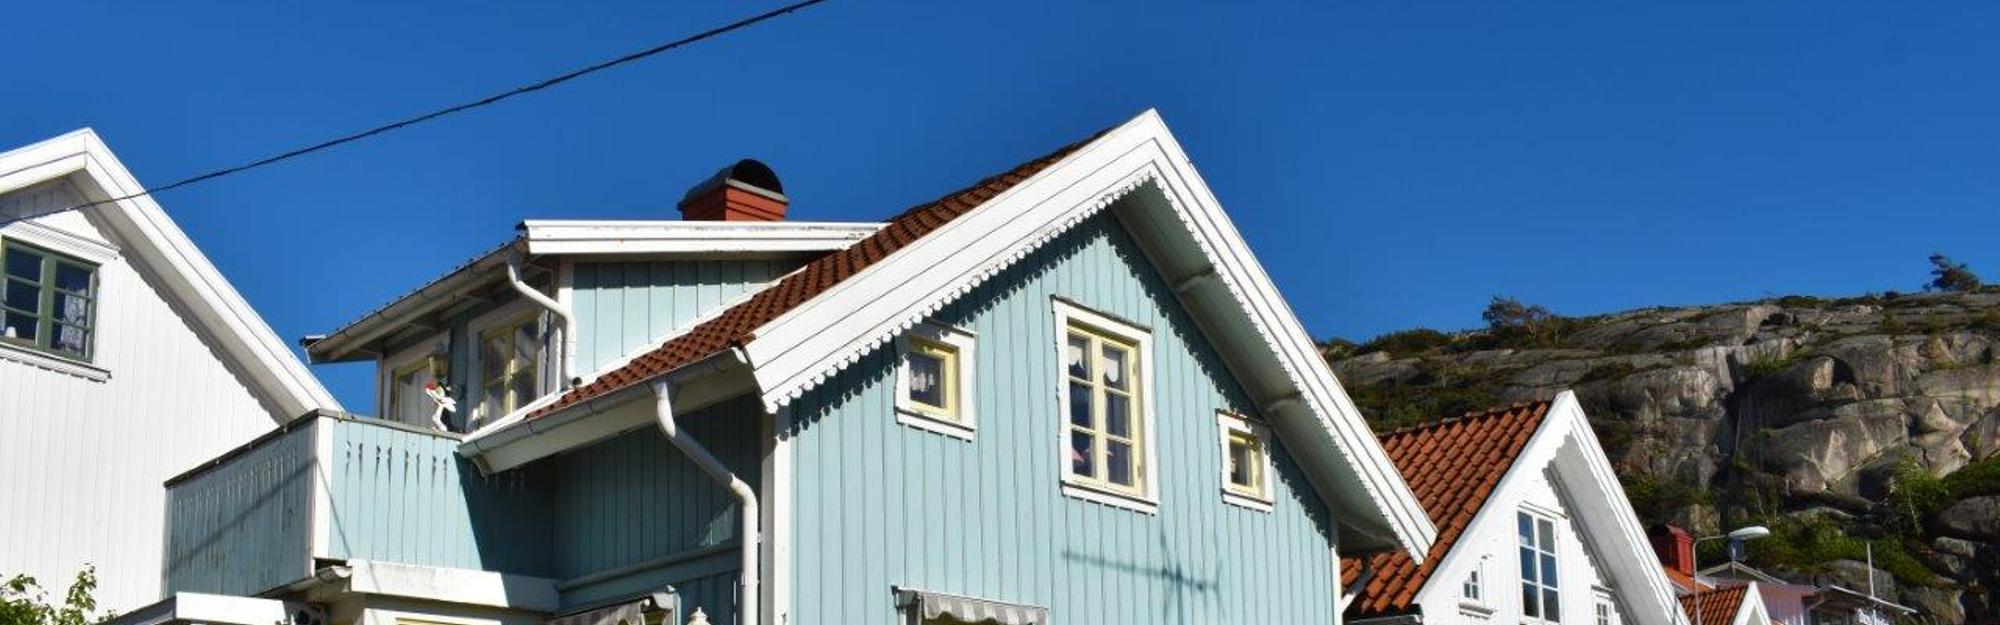 Hus i gammal stil i Fjällbacka